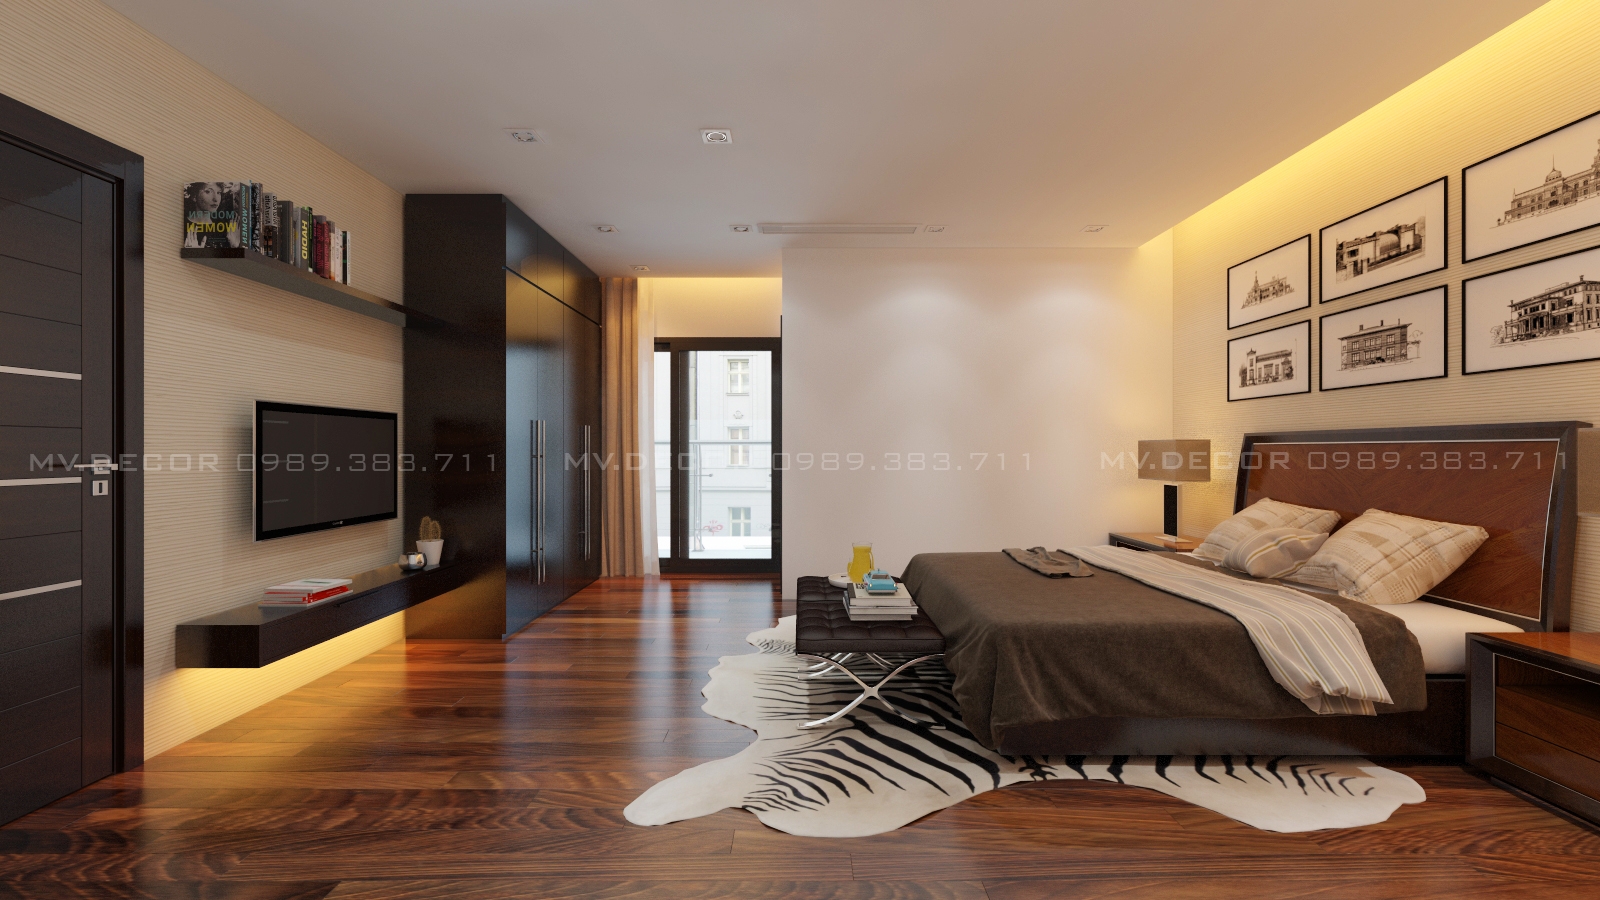 thiết kế nội thất chung cư tại Hà Nội penthouse golden palace 32 1549988642